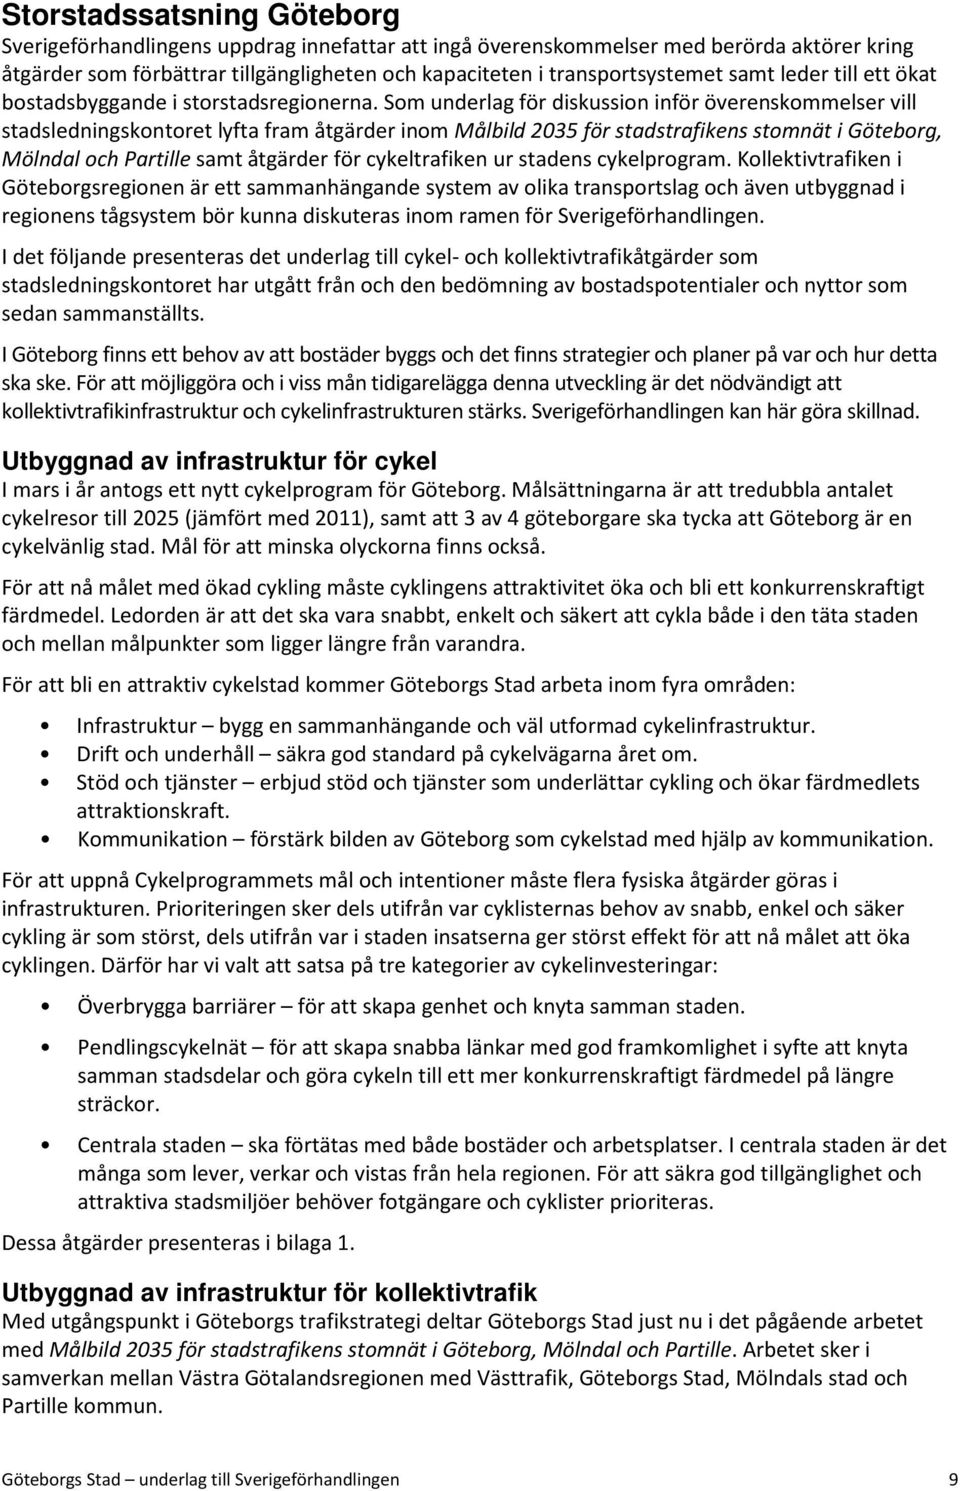 Som underlag för diskussion inför överenskommelser vill stadsledningskontoret lyfta fram åtgärder inom Målbild 2035 för stadstrafikens stomnät i Göteborg, Mölndal och Partille samt åtgärder för